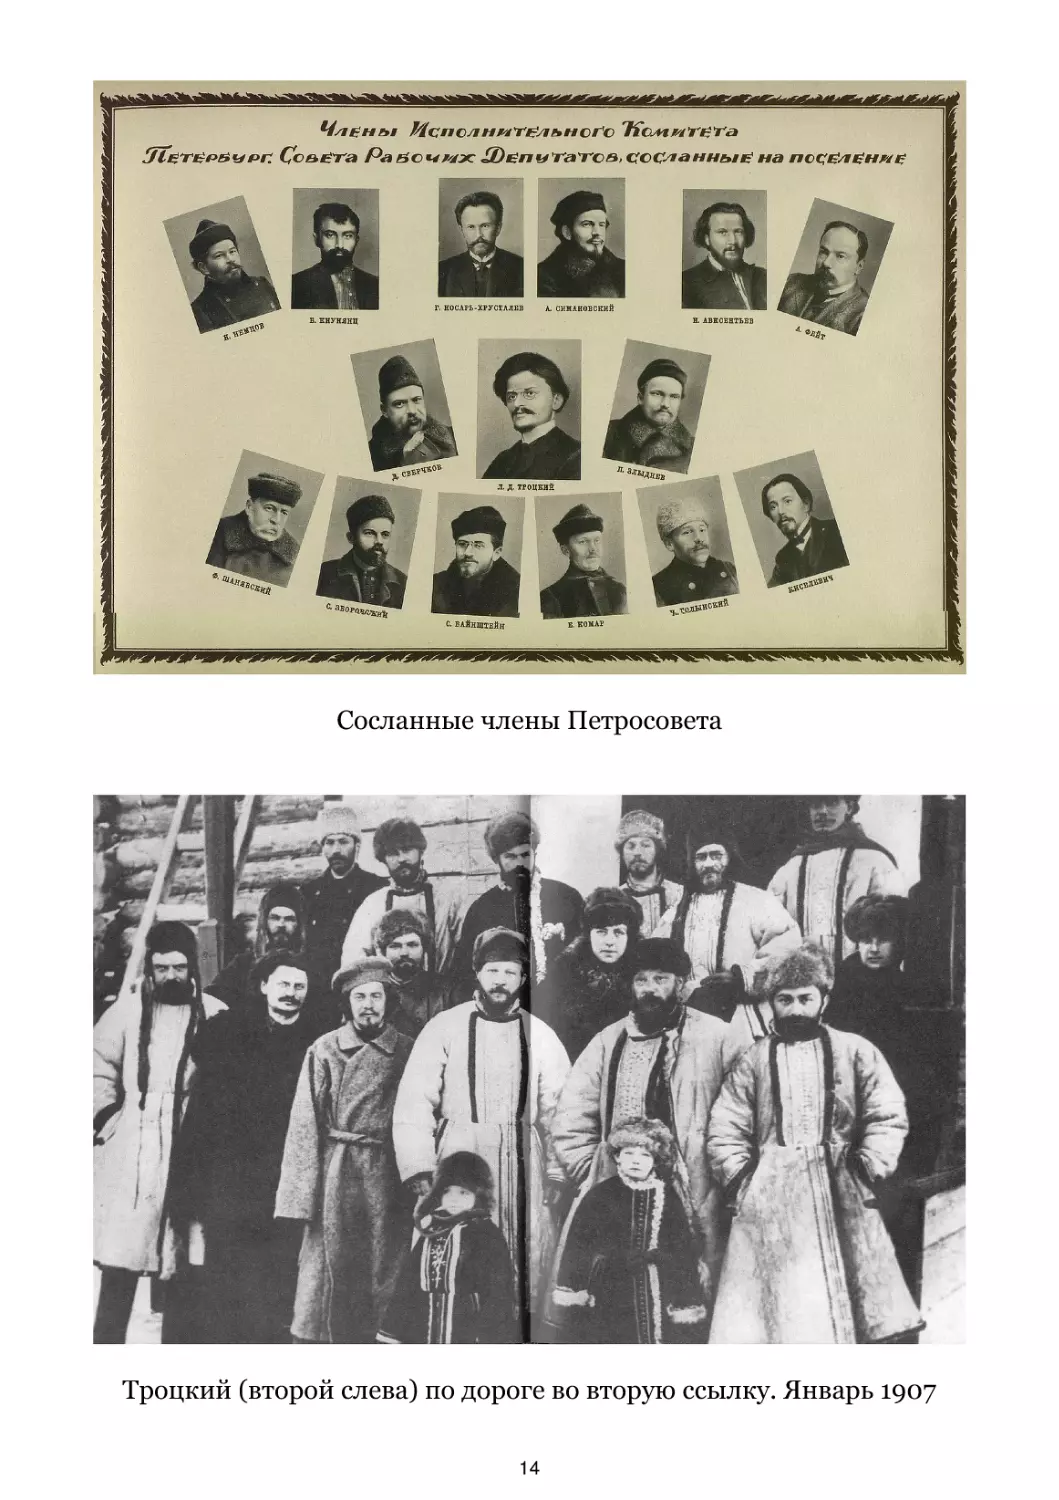 Сосланные члены Петросовета
Троцкий по дороге во вторую ссылку. Январь 1907